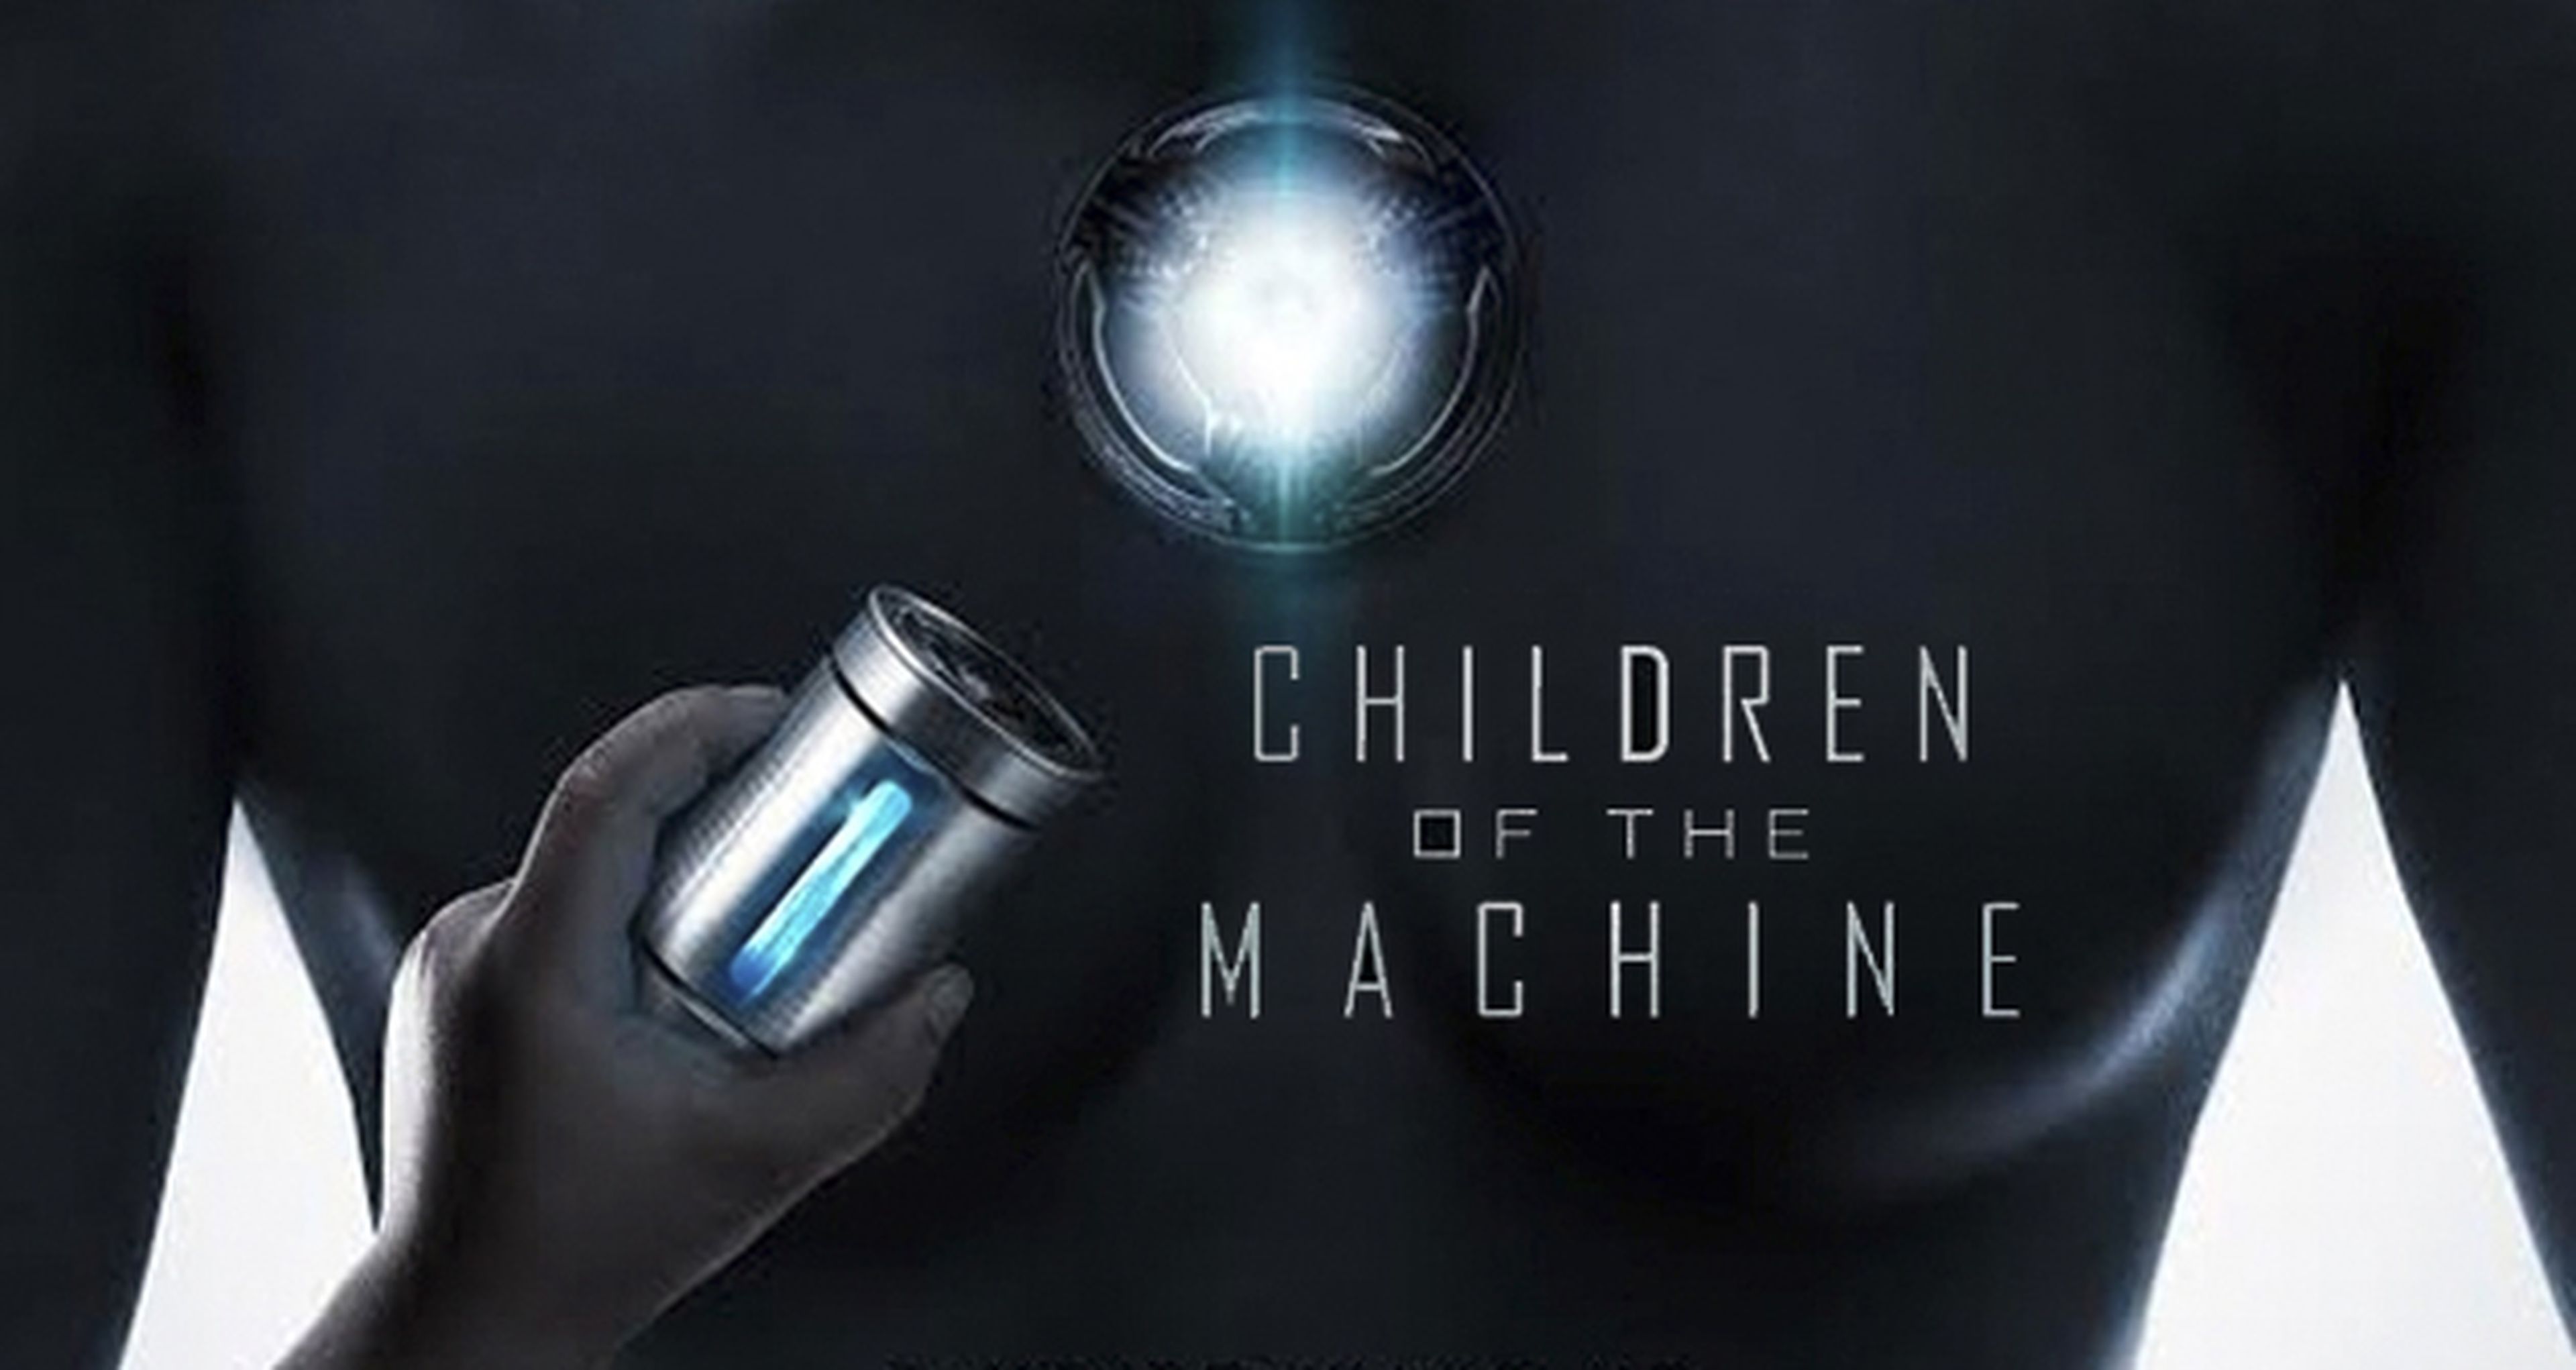 BitTorrent anuncia Children of the Machine, su primera serie original de ci-fi